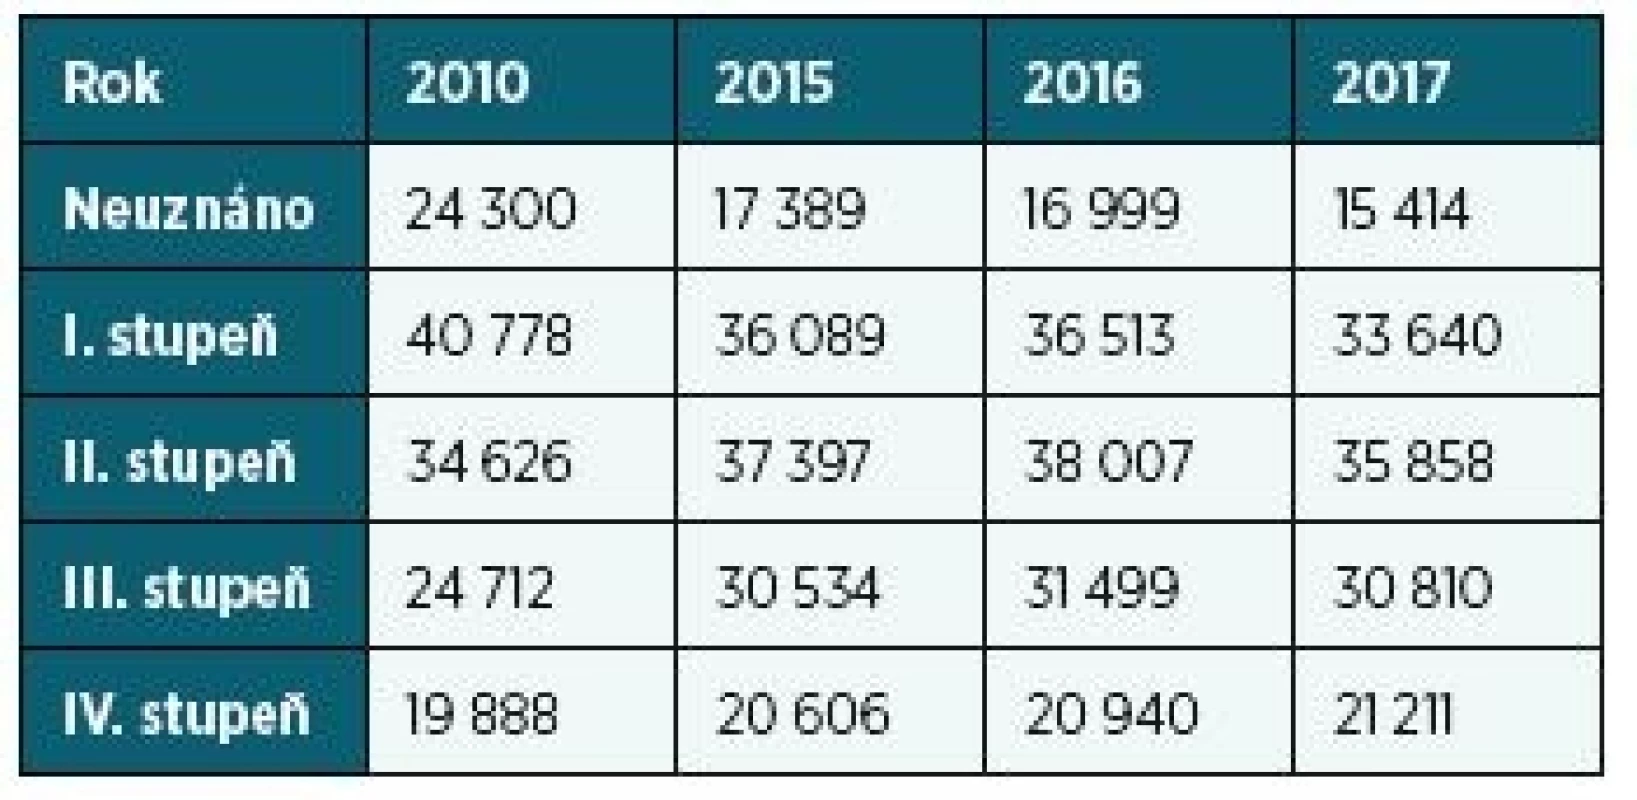 Srovnání počtu posouzených podle přiznaného stupně,
2010, 2015, 2016, 2017